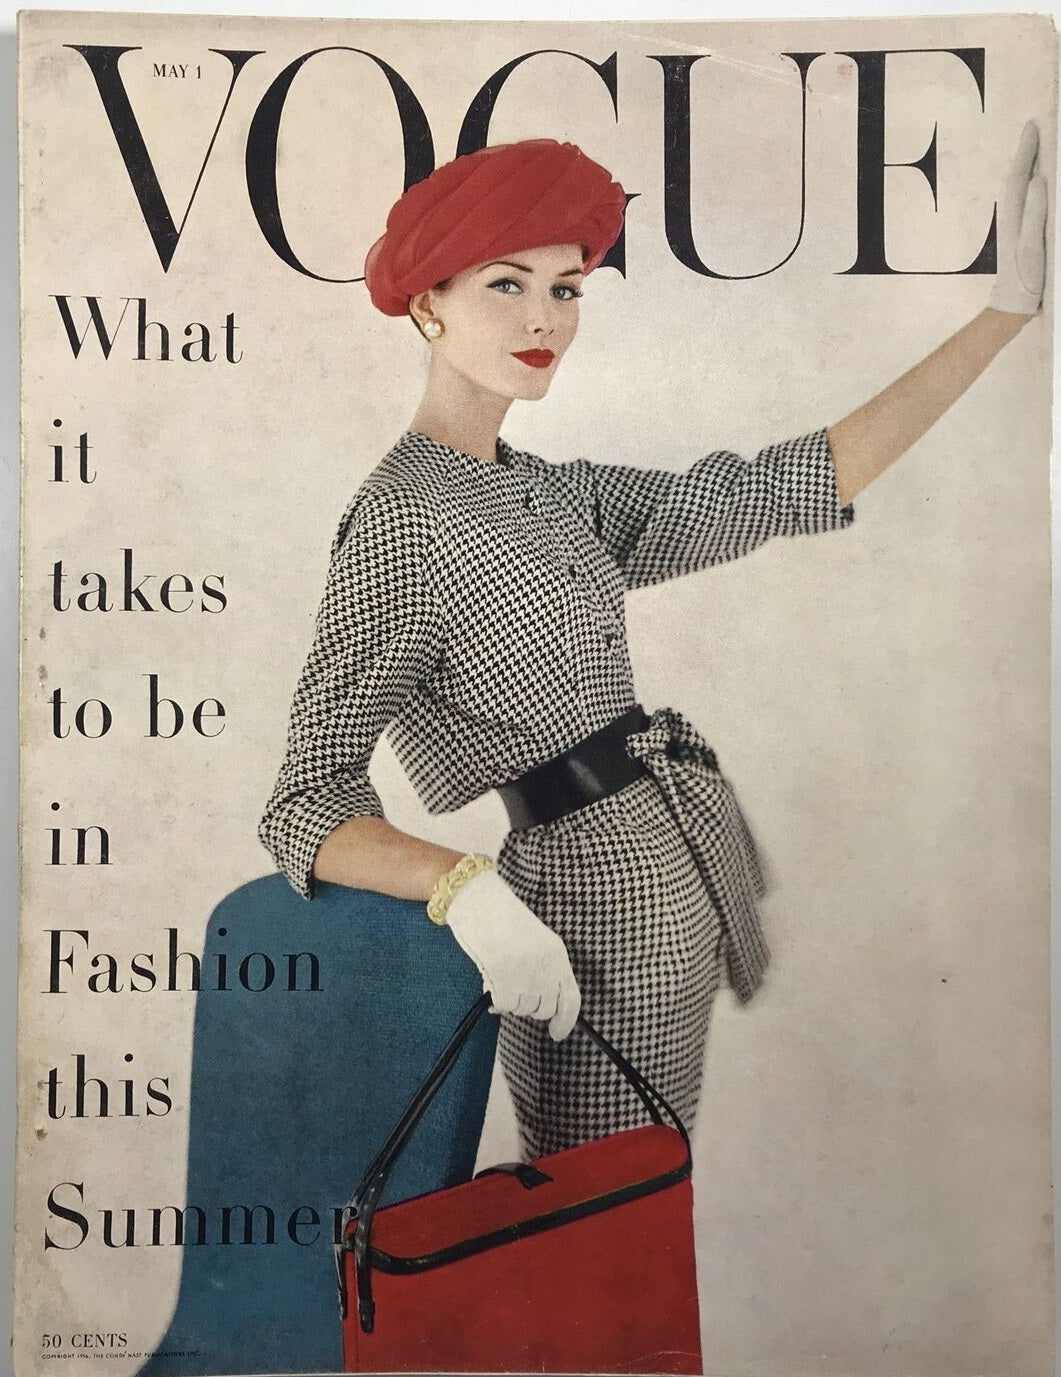 1950s handbag trends: coordinated accessories